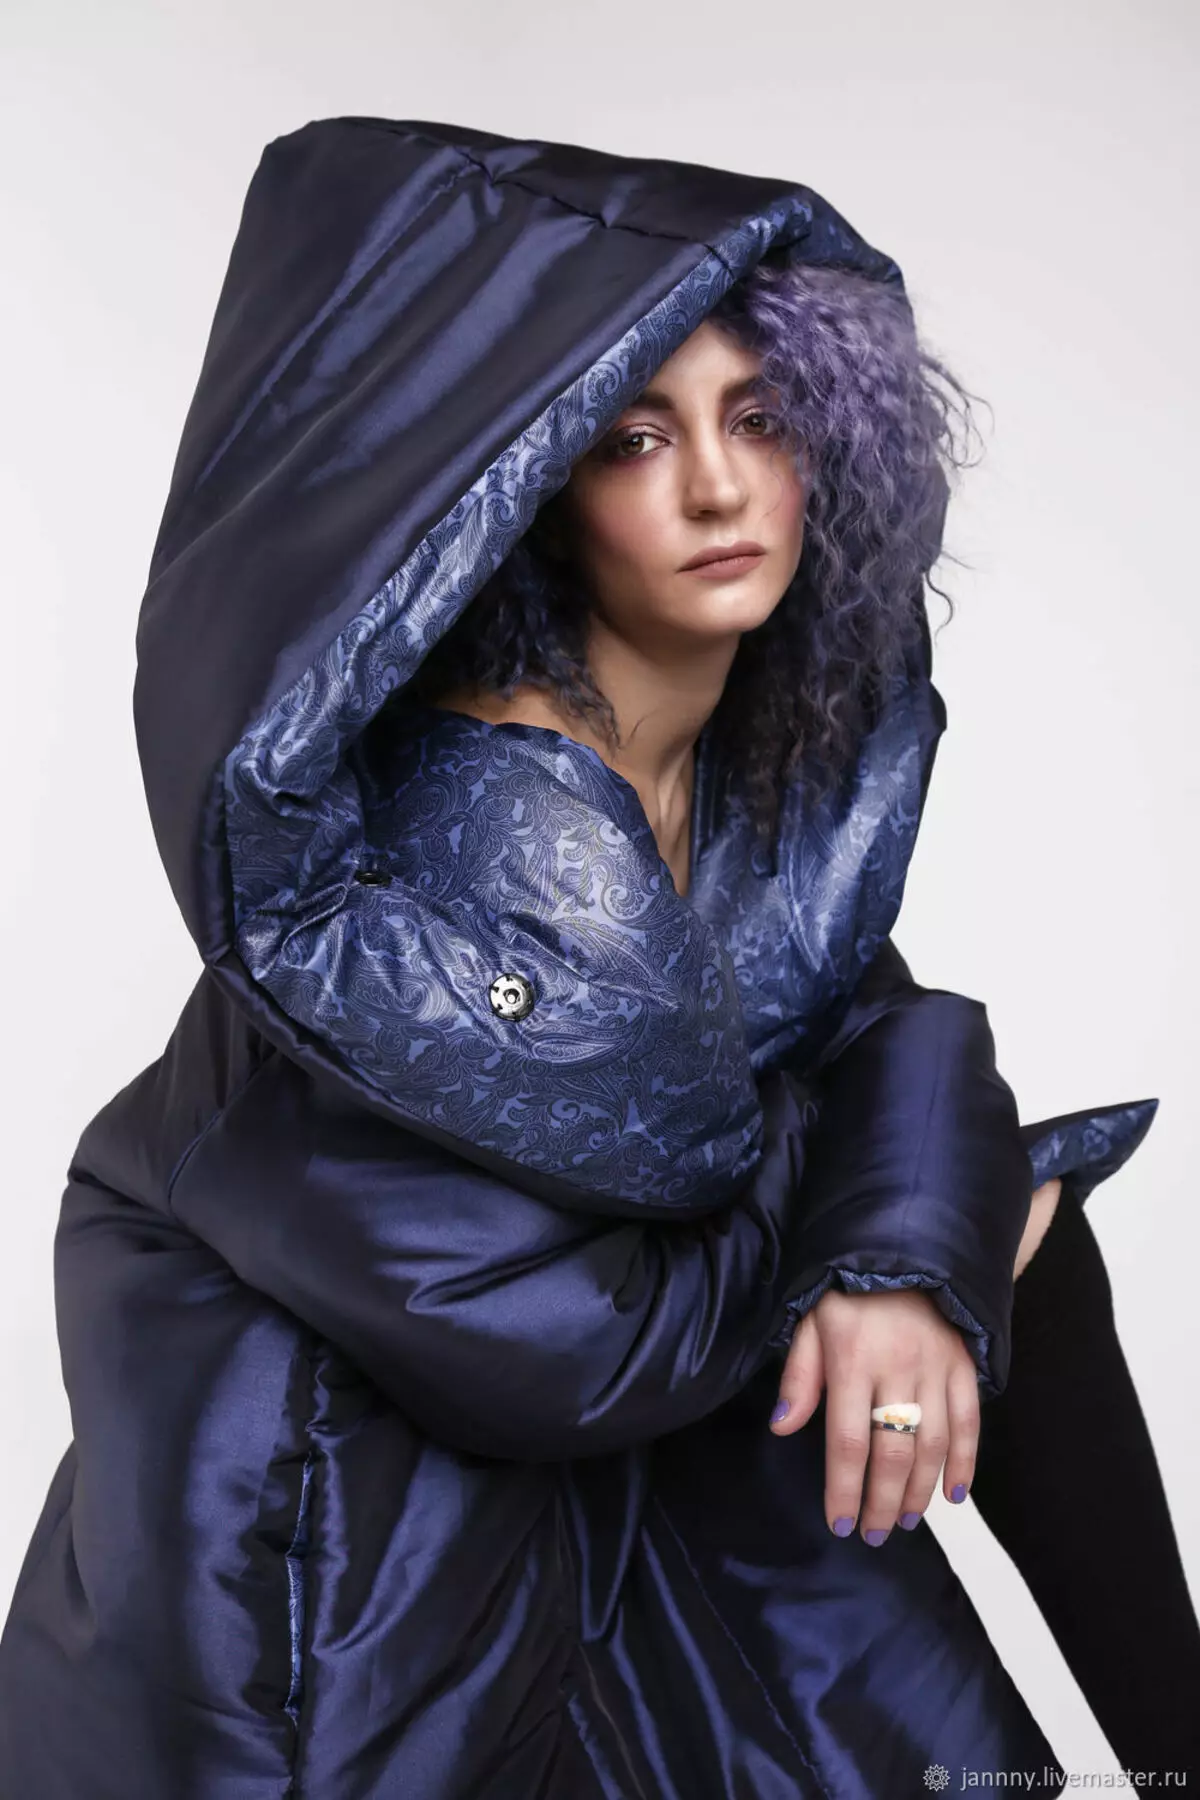 羽毛毯（112张照片）：女式冬季外套和夹克 - 带引擎盖和没有的毯子。穿什么？时尚品牌模型 315_56